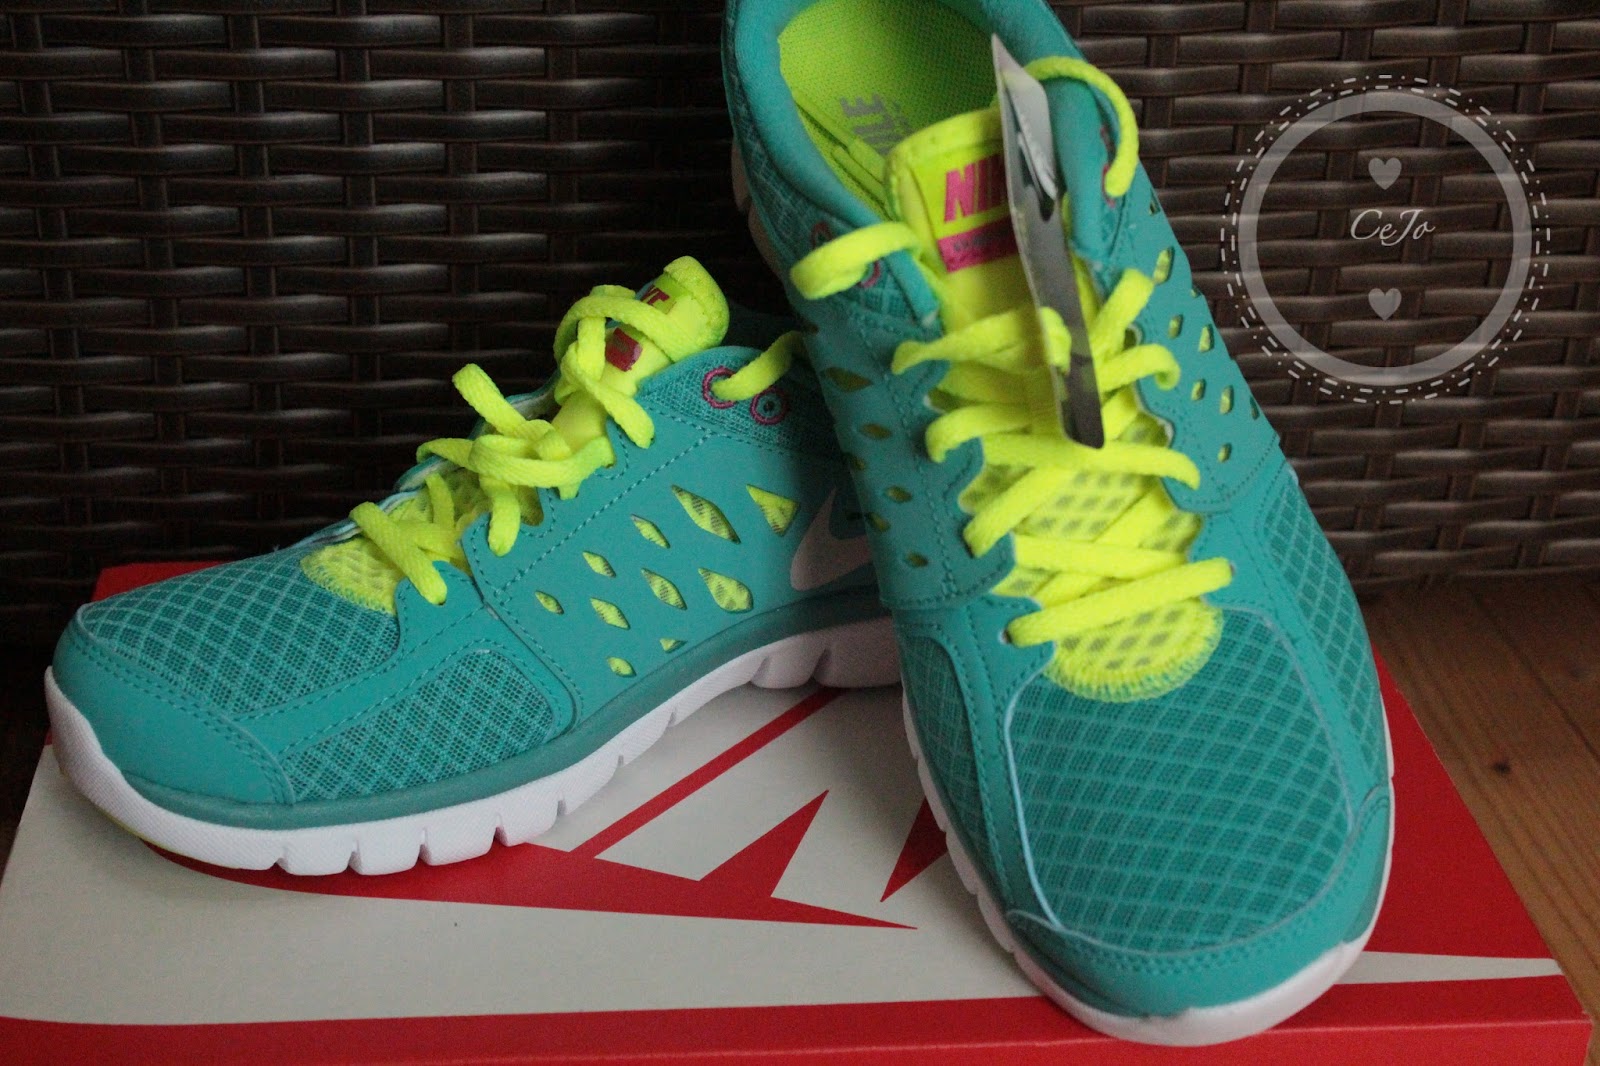 bijtend pleegouders Oraal Hauls - New Shoes - Nike 2013 Flex Running Shoe | CeJo